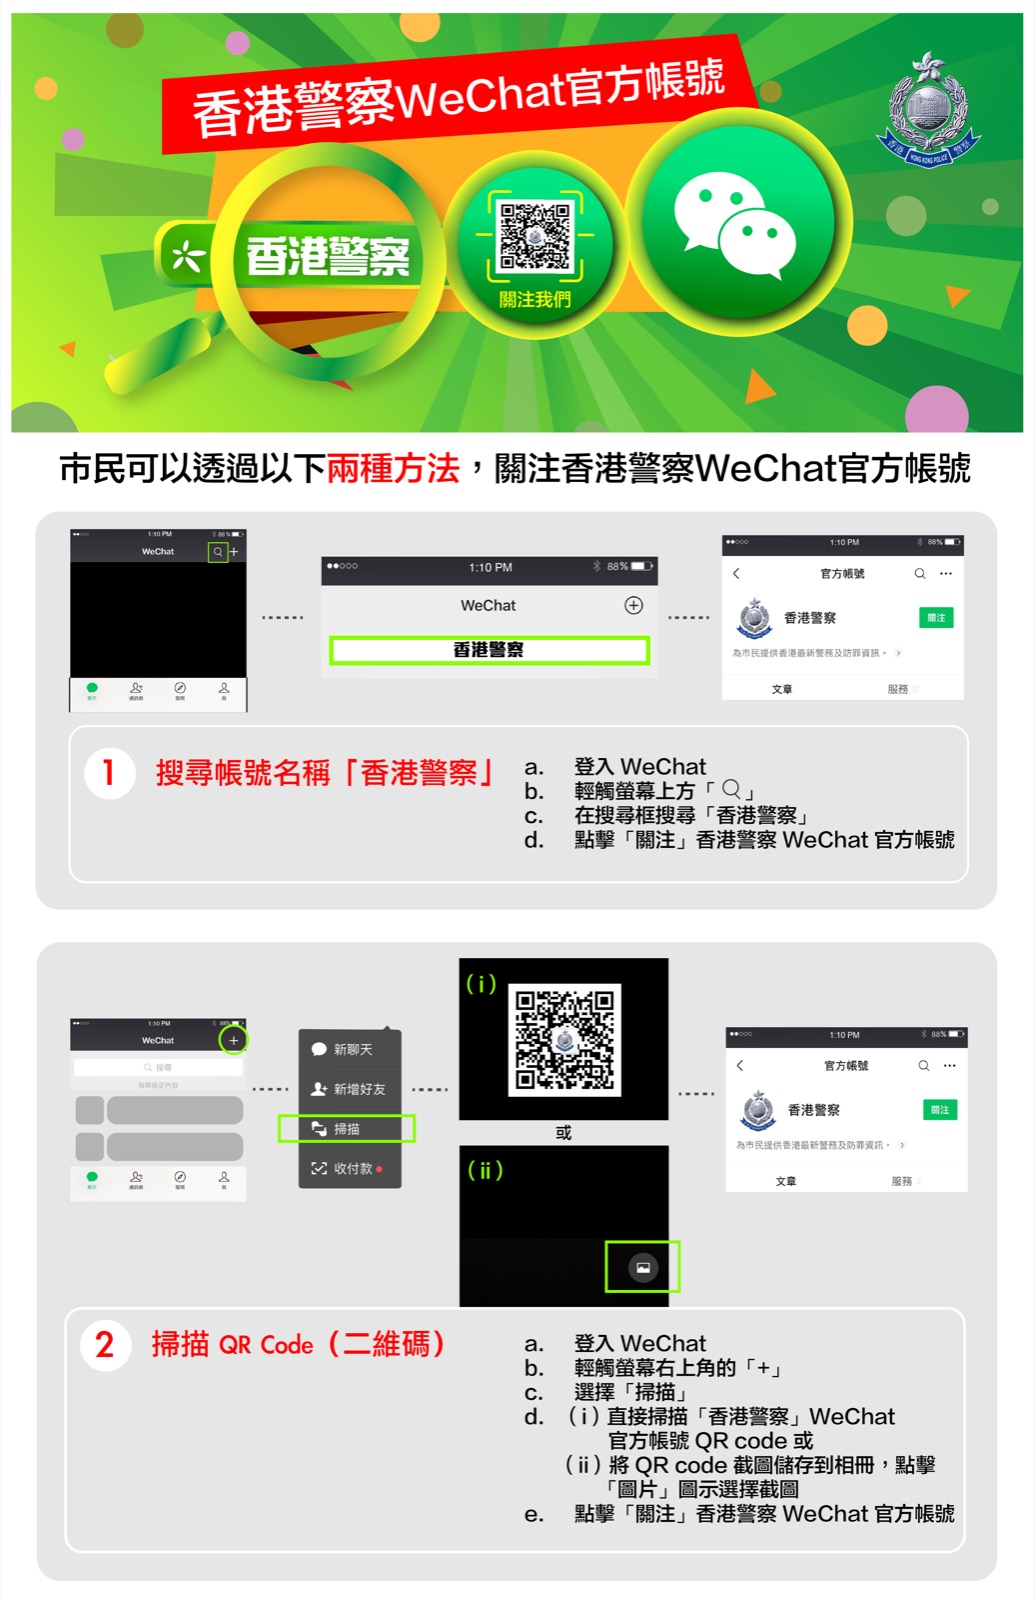 市民可以透过以下两种方法，关注香港警察WeChat 官方帐号：1. 搜寻WeChat ID“香港警察”- 首先，请开启并登录 WeChat应用程序，然后轻触荧幕上方的“放大镜”，在搜寻框输入“香港警察”搜寻，最后点击“关注”，完成关注香港警察WeChat官方帐号。 2. 扫描QR Code（二维码）
              首先，请开启并登录 WeChat应用程序，然后轻触荧幕右上角的“+”图标，再选择“扫描”。市民可以直接扫描香港警察WeChat官方帐号的QR Code或者先将QR Code截屏保存到相册，再点击画面右下角的“图片”图标选择刚才的截屏以供辨识。最后点击“关注”，完成关注香港警察WeChat官方帐号。